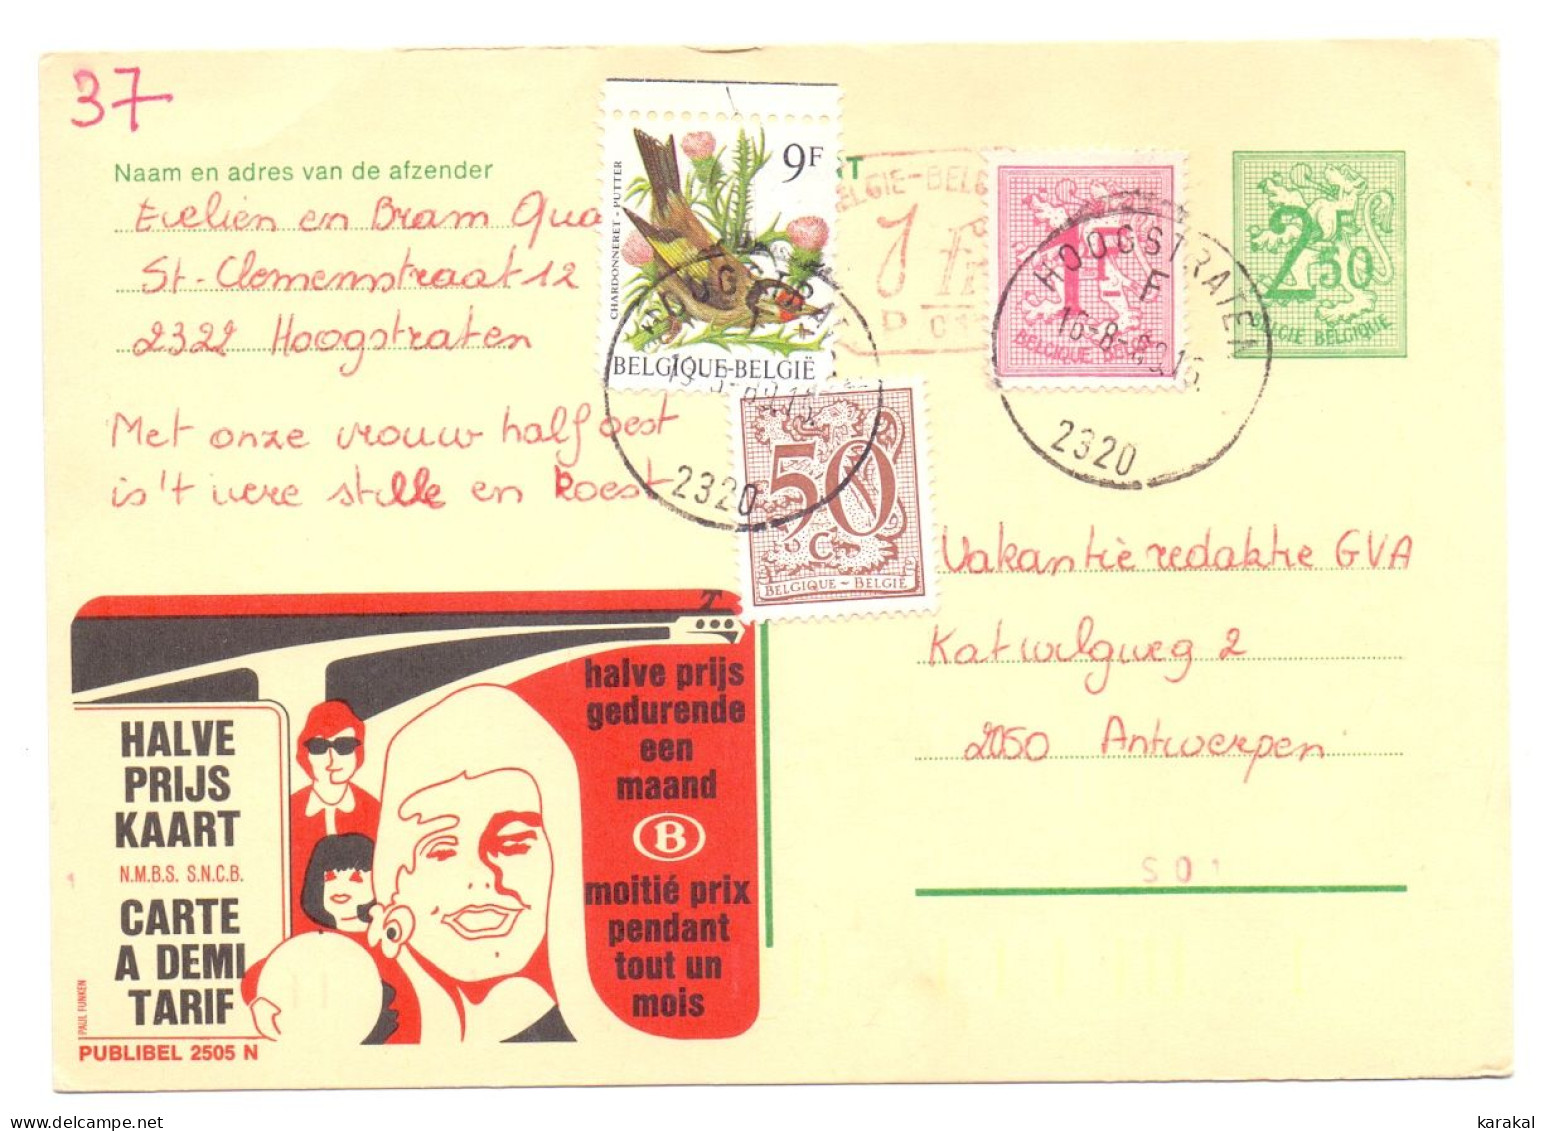 Belgique Entier Postal Stationery Publibel 2505 N P010 SNCB NMBS Halve Prijs Kaart Hoogstraten 1989 - Addr. Chang.